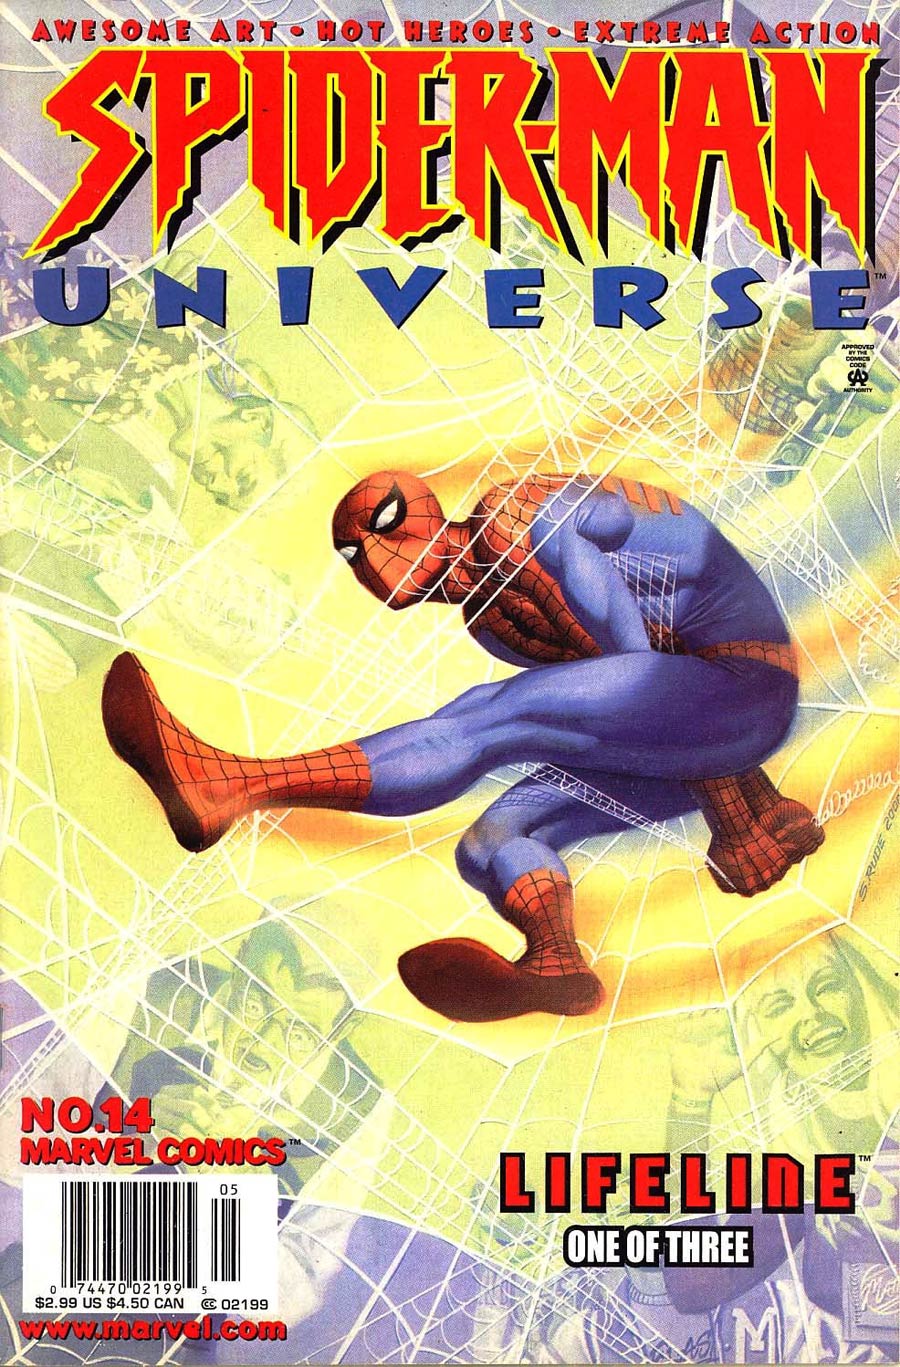 Spider-Man Universe #14